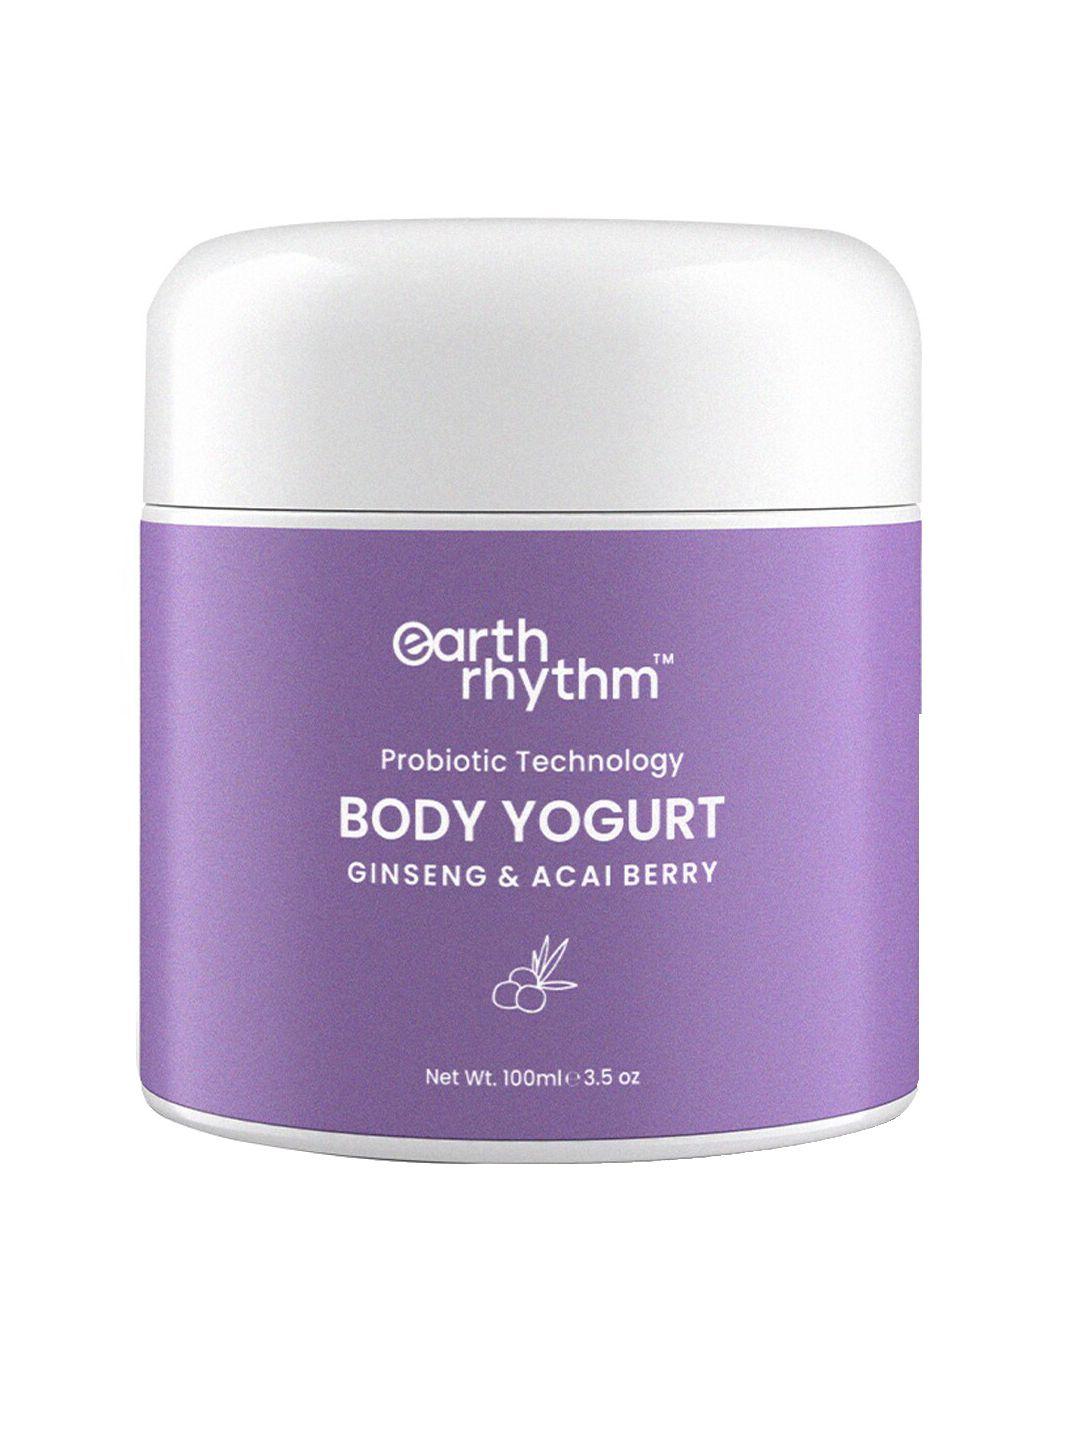 earth rhythm ginseng & acai berry probiotic technology body yogurt - 100 ml